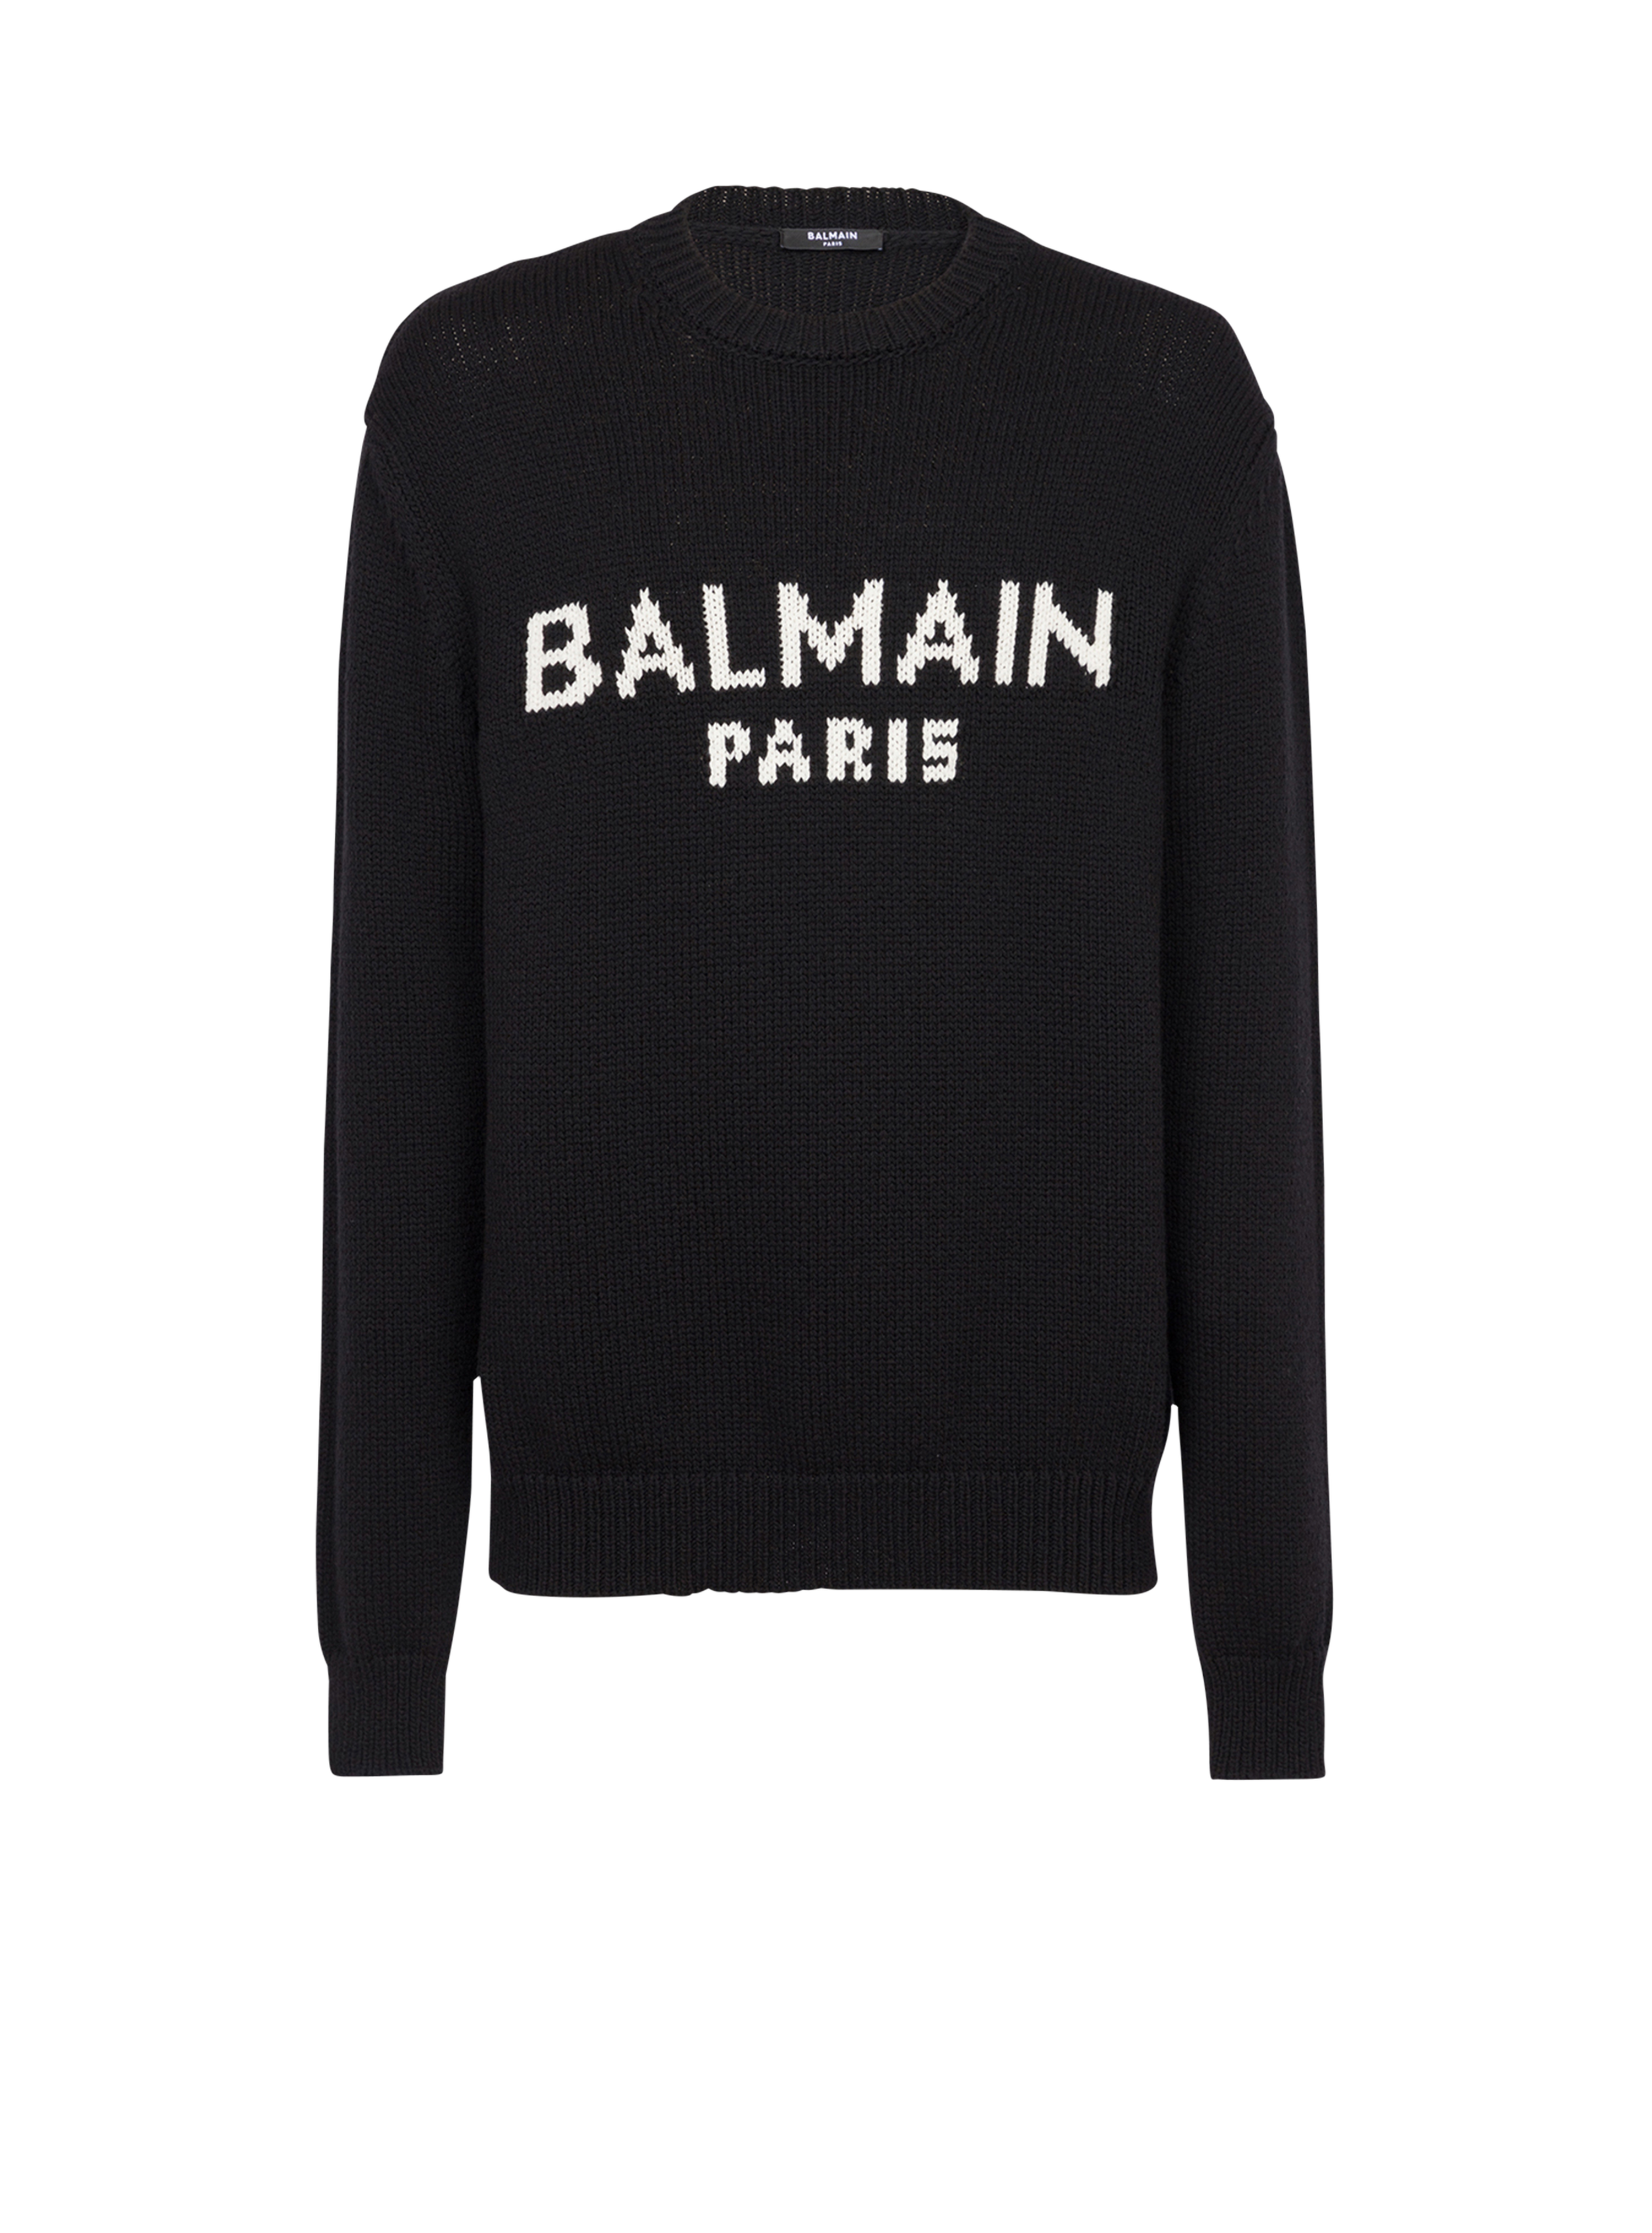 Jersey de lana merino con logotipo de Balmain Paris blanco, negro